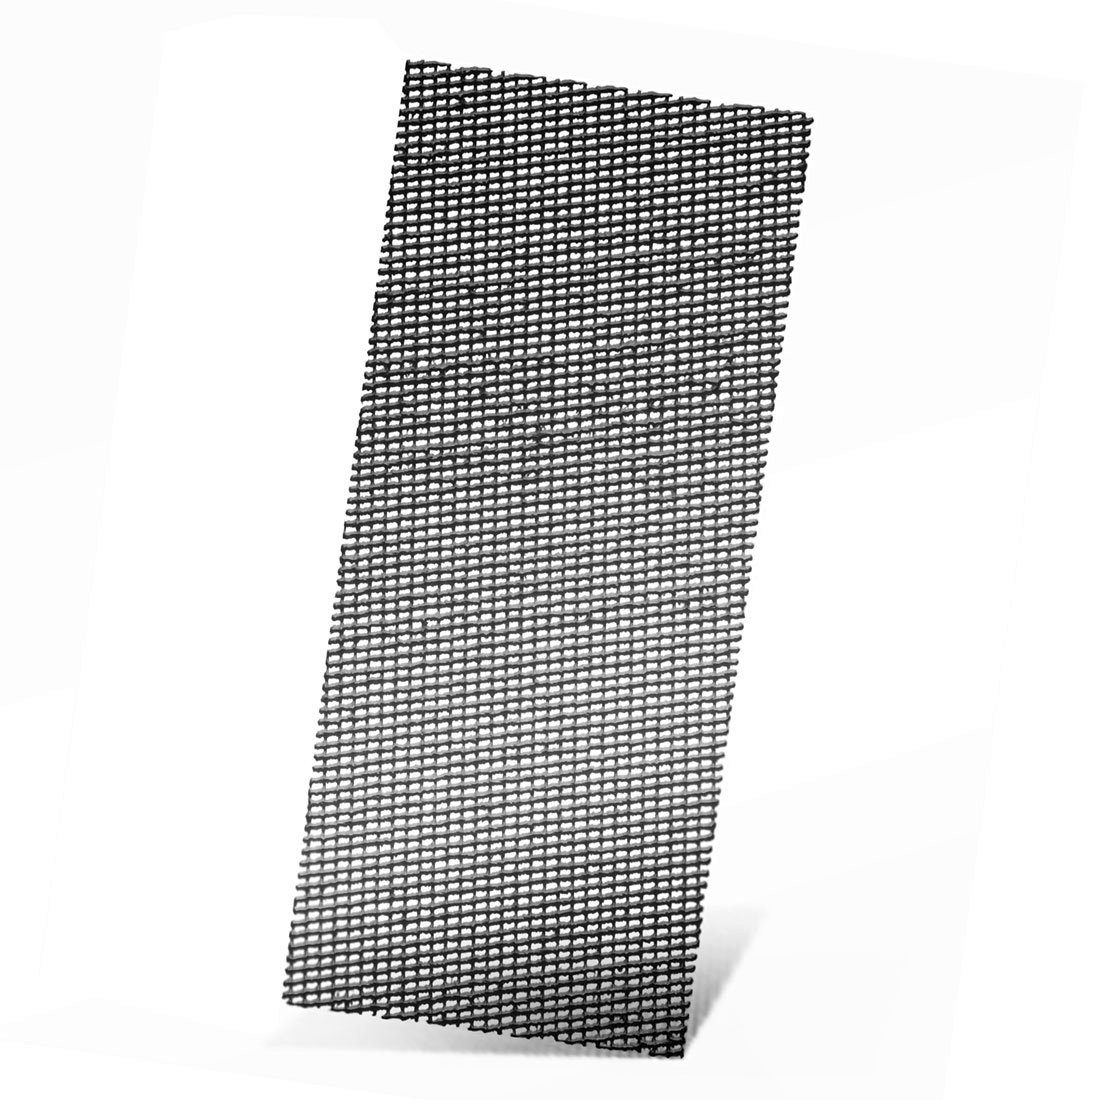 MENZER Schleifpapier 280 x 115 mm Schleifgitter für Handschleifer, Siliciumcarbid, 10 Stk., K60